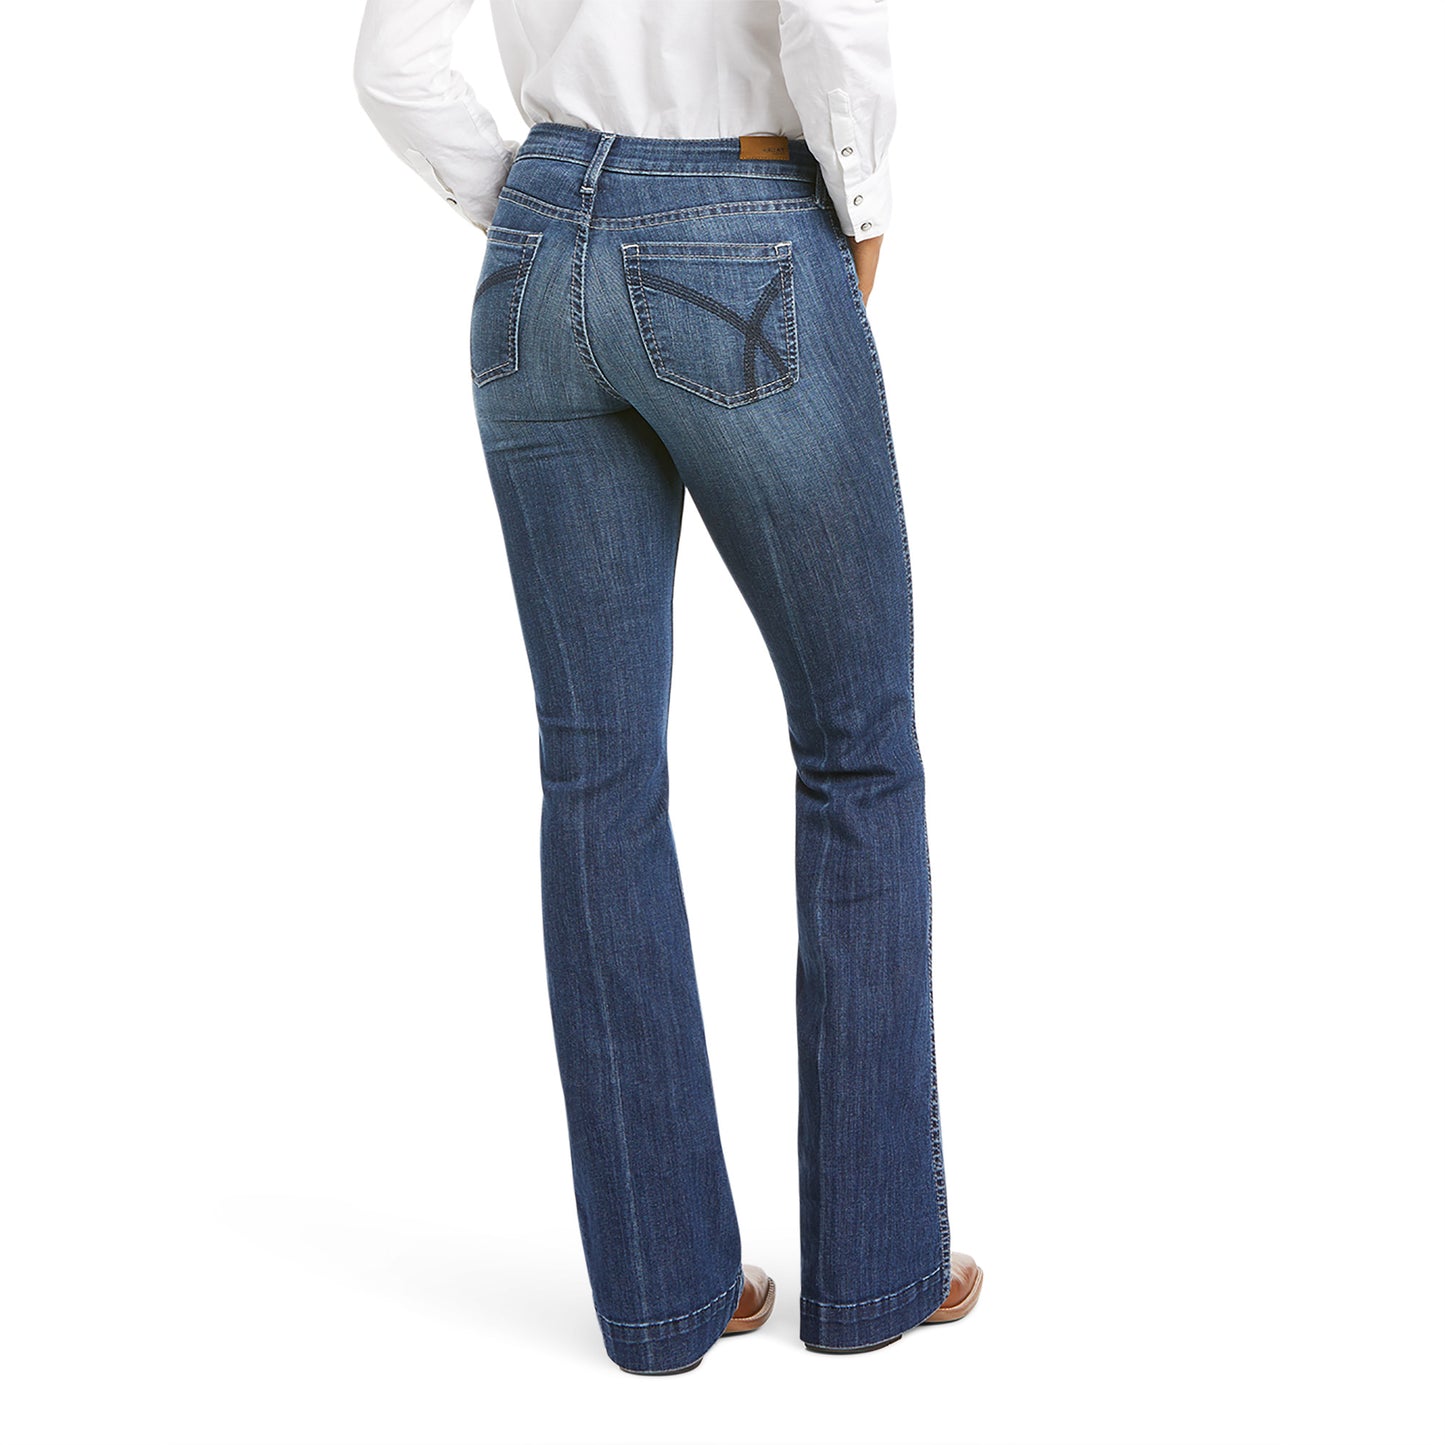 Ariat Women's Rascal Trouser Jeans | Boot Barn